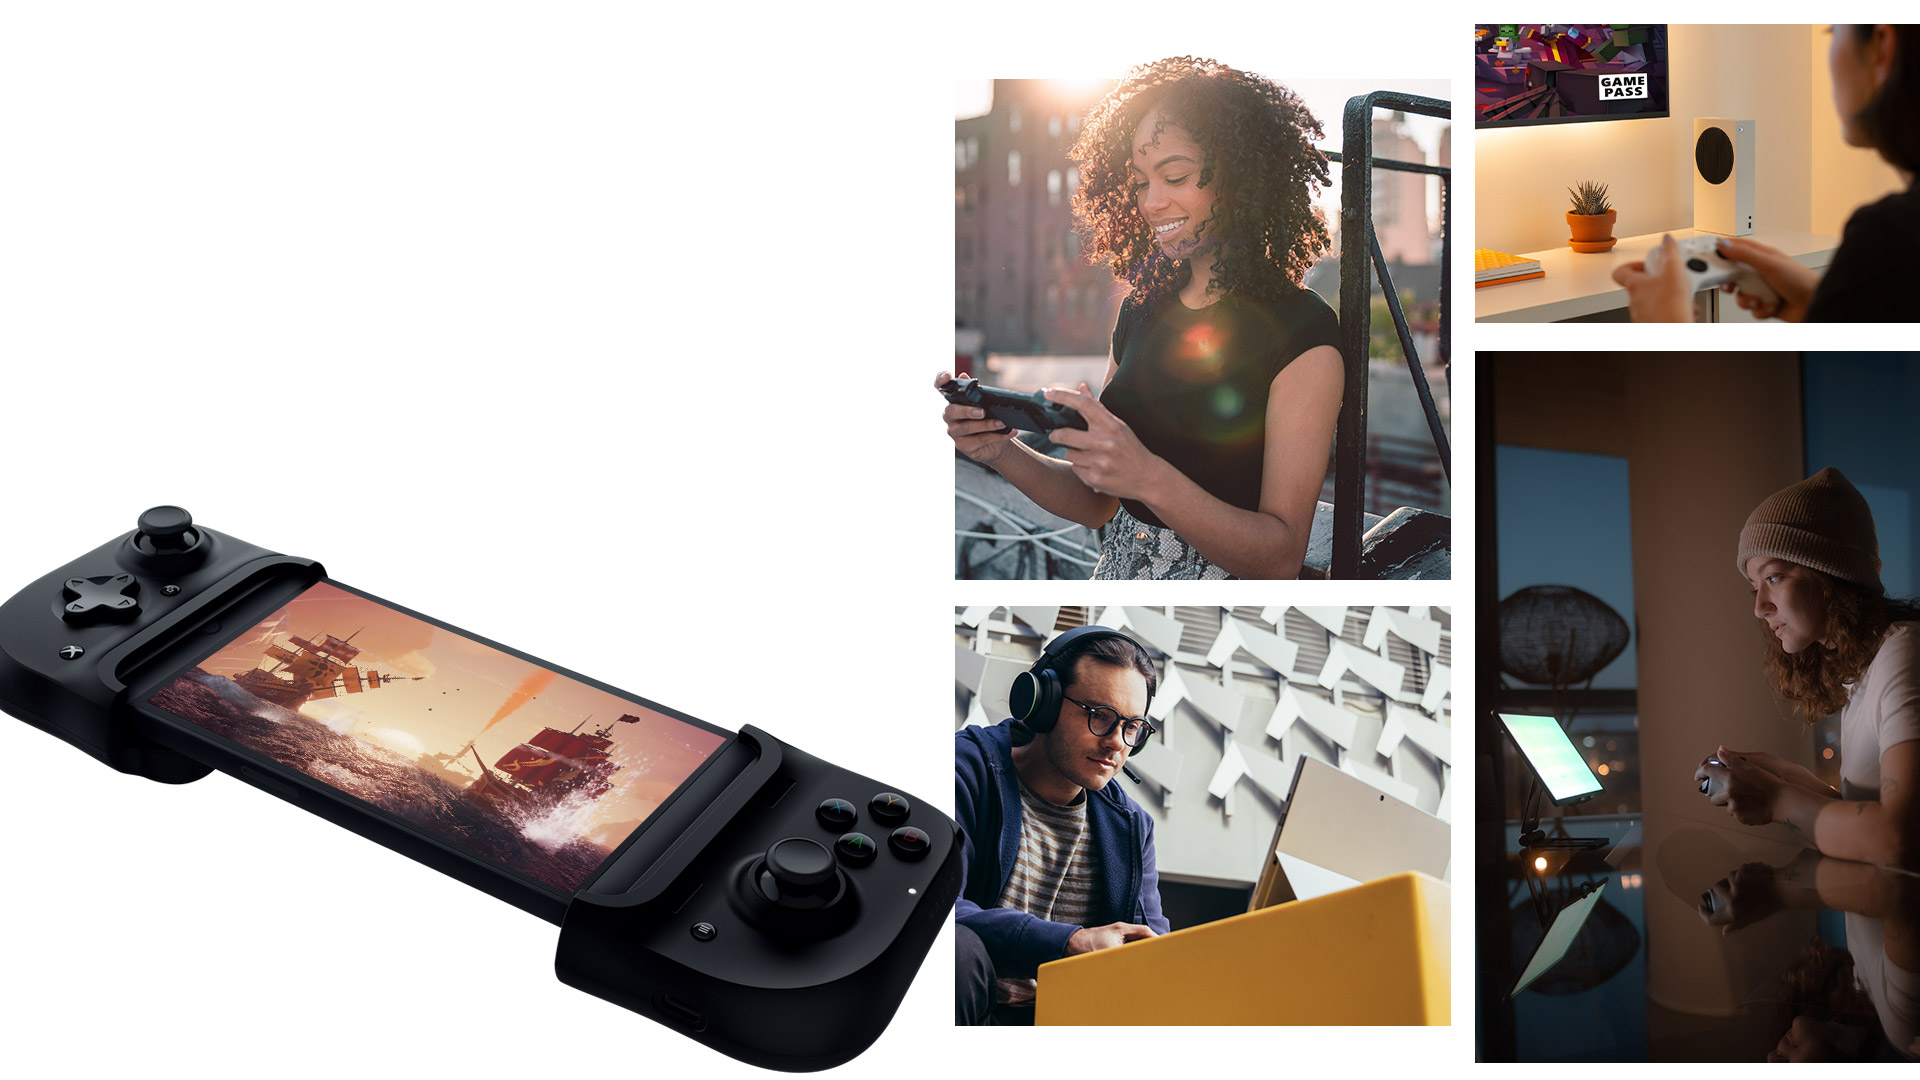 Surface Laptop、Xbox Series S、タブレット、スマホなどのデバイスでゲームをプレイしている人々。